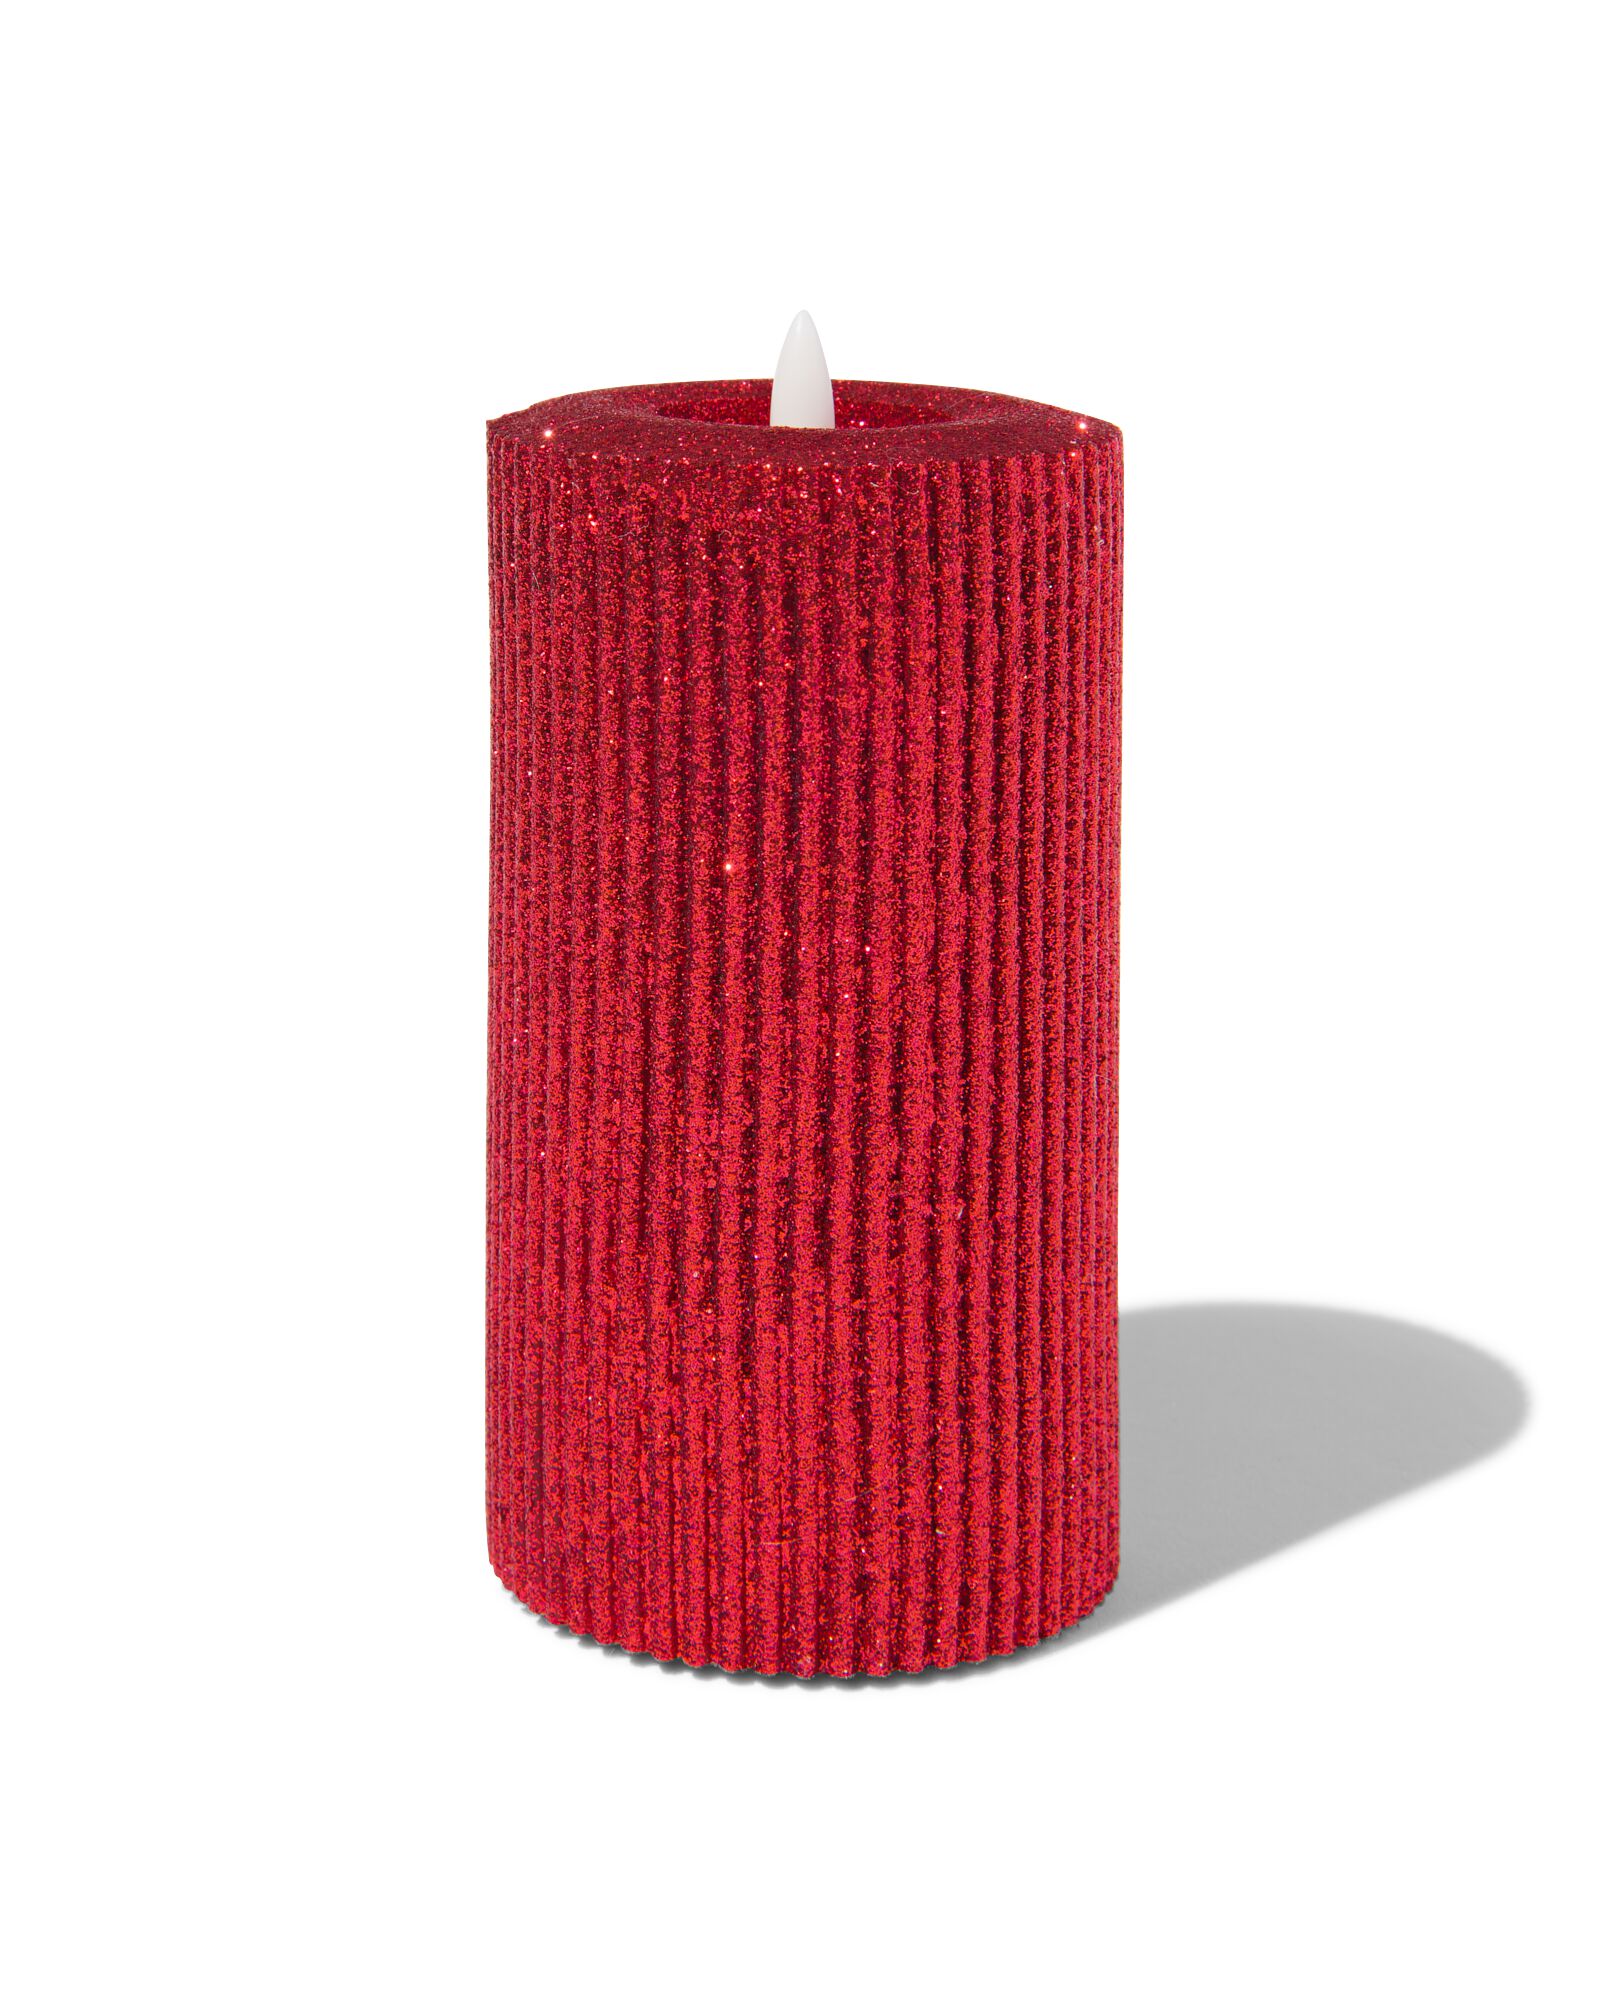 Bougie chauffe plat LED à paillette - set de 3pièces - Coloris Rouge